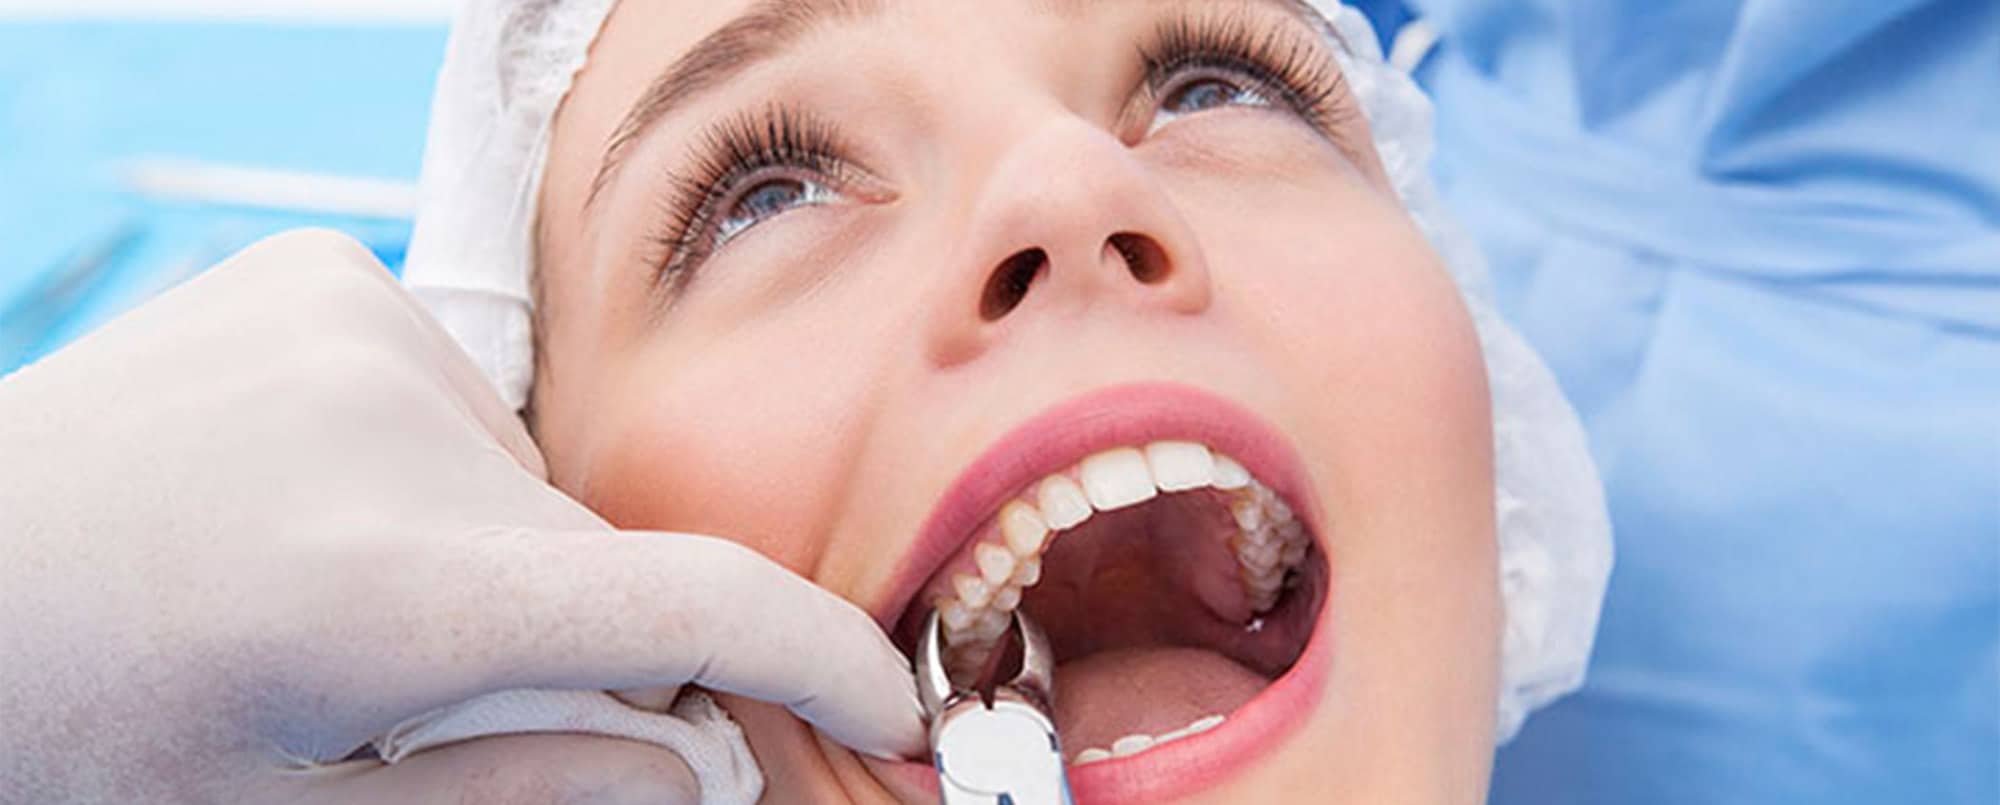 Visul extracției dentare